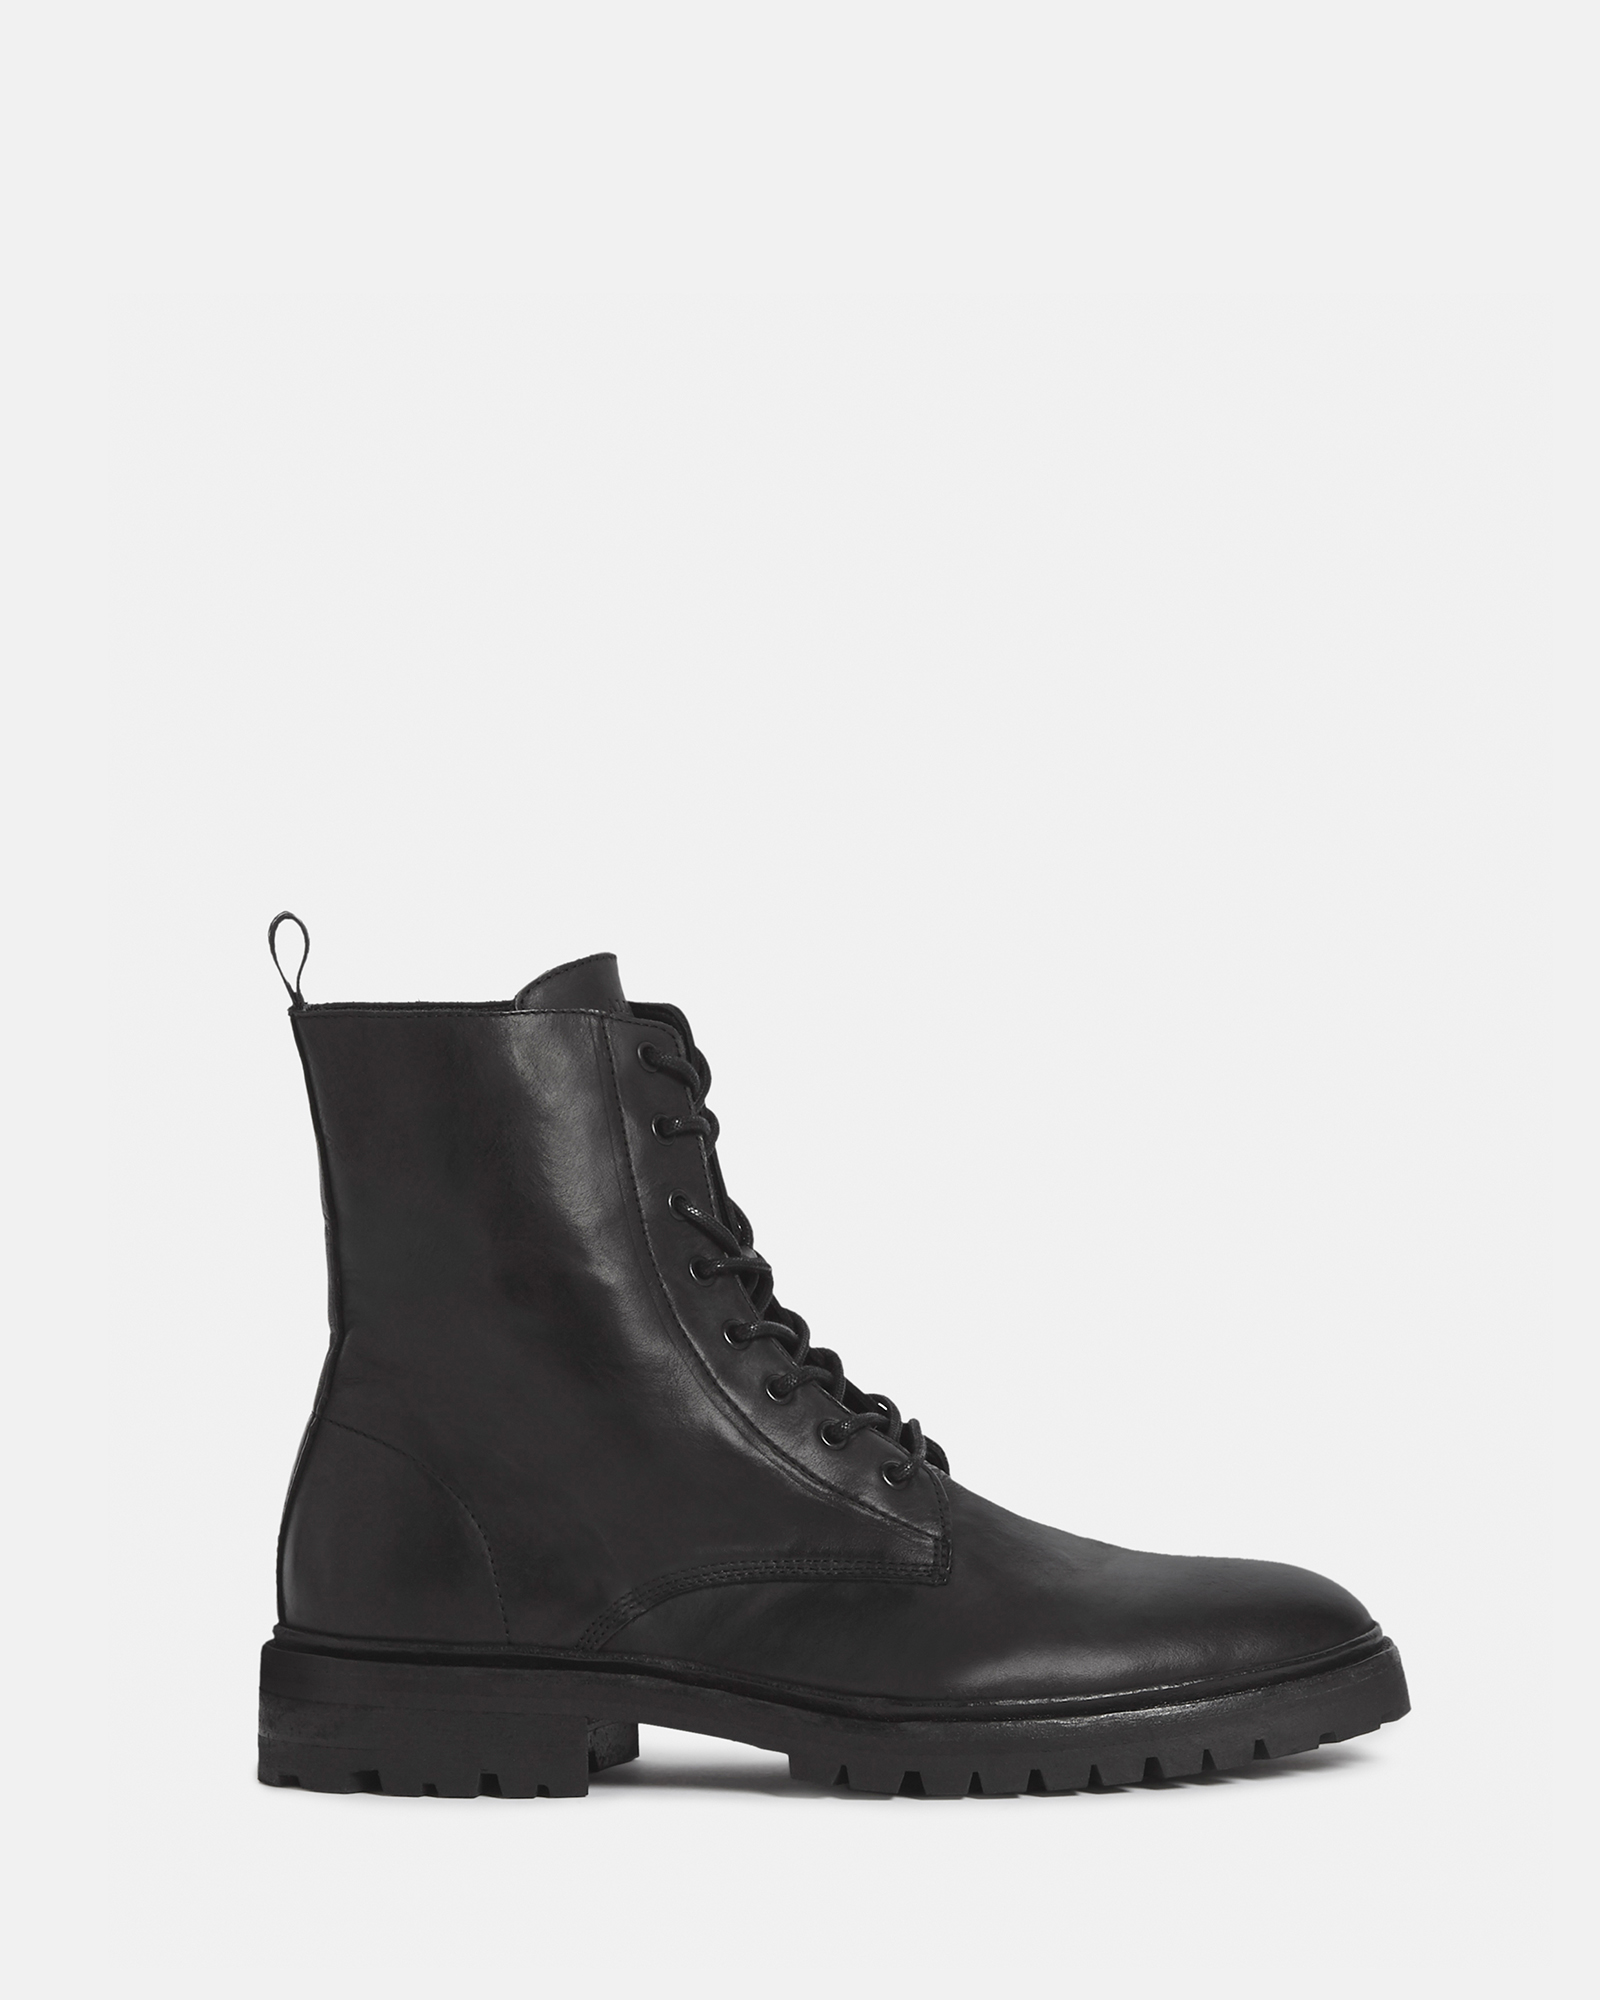 AllSaints Tobias Leather Boots,, Black, Size: UK